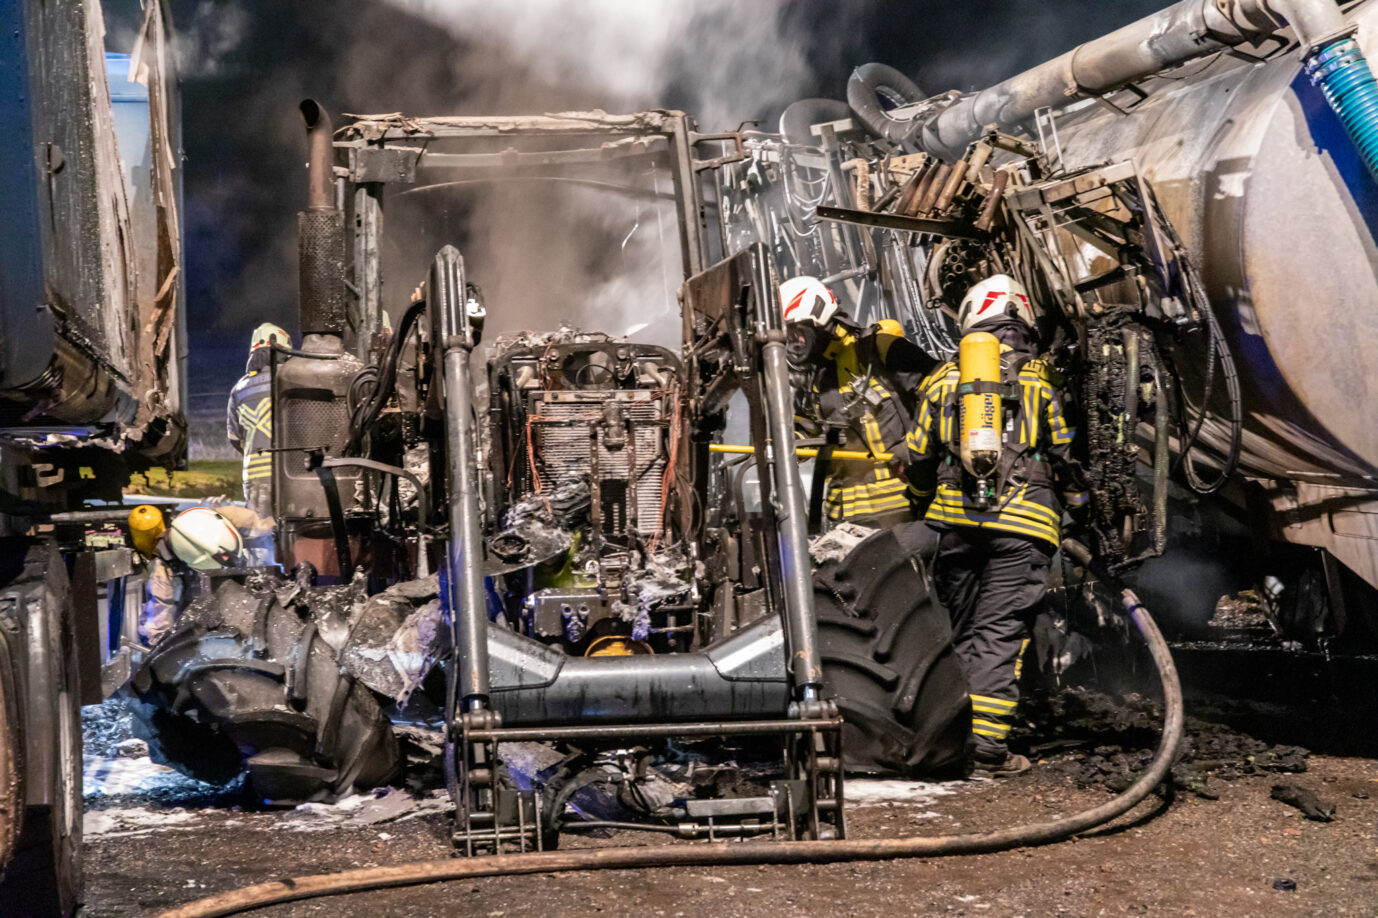 Feuerwehrleute bekämpfen die Flammen auf dem Hof in Oelsnitz. Vier Fahrzeuge der Bauern brennen aus.